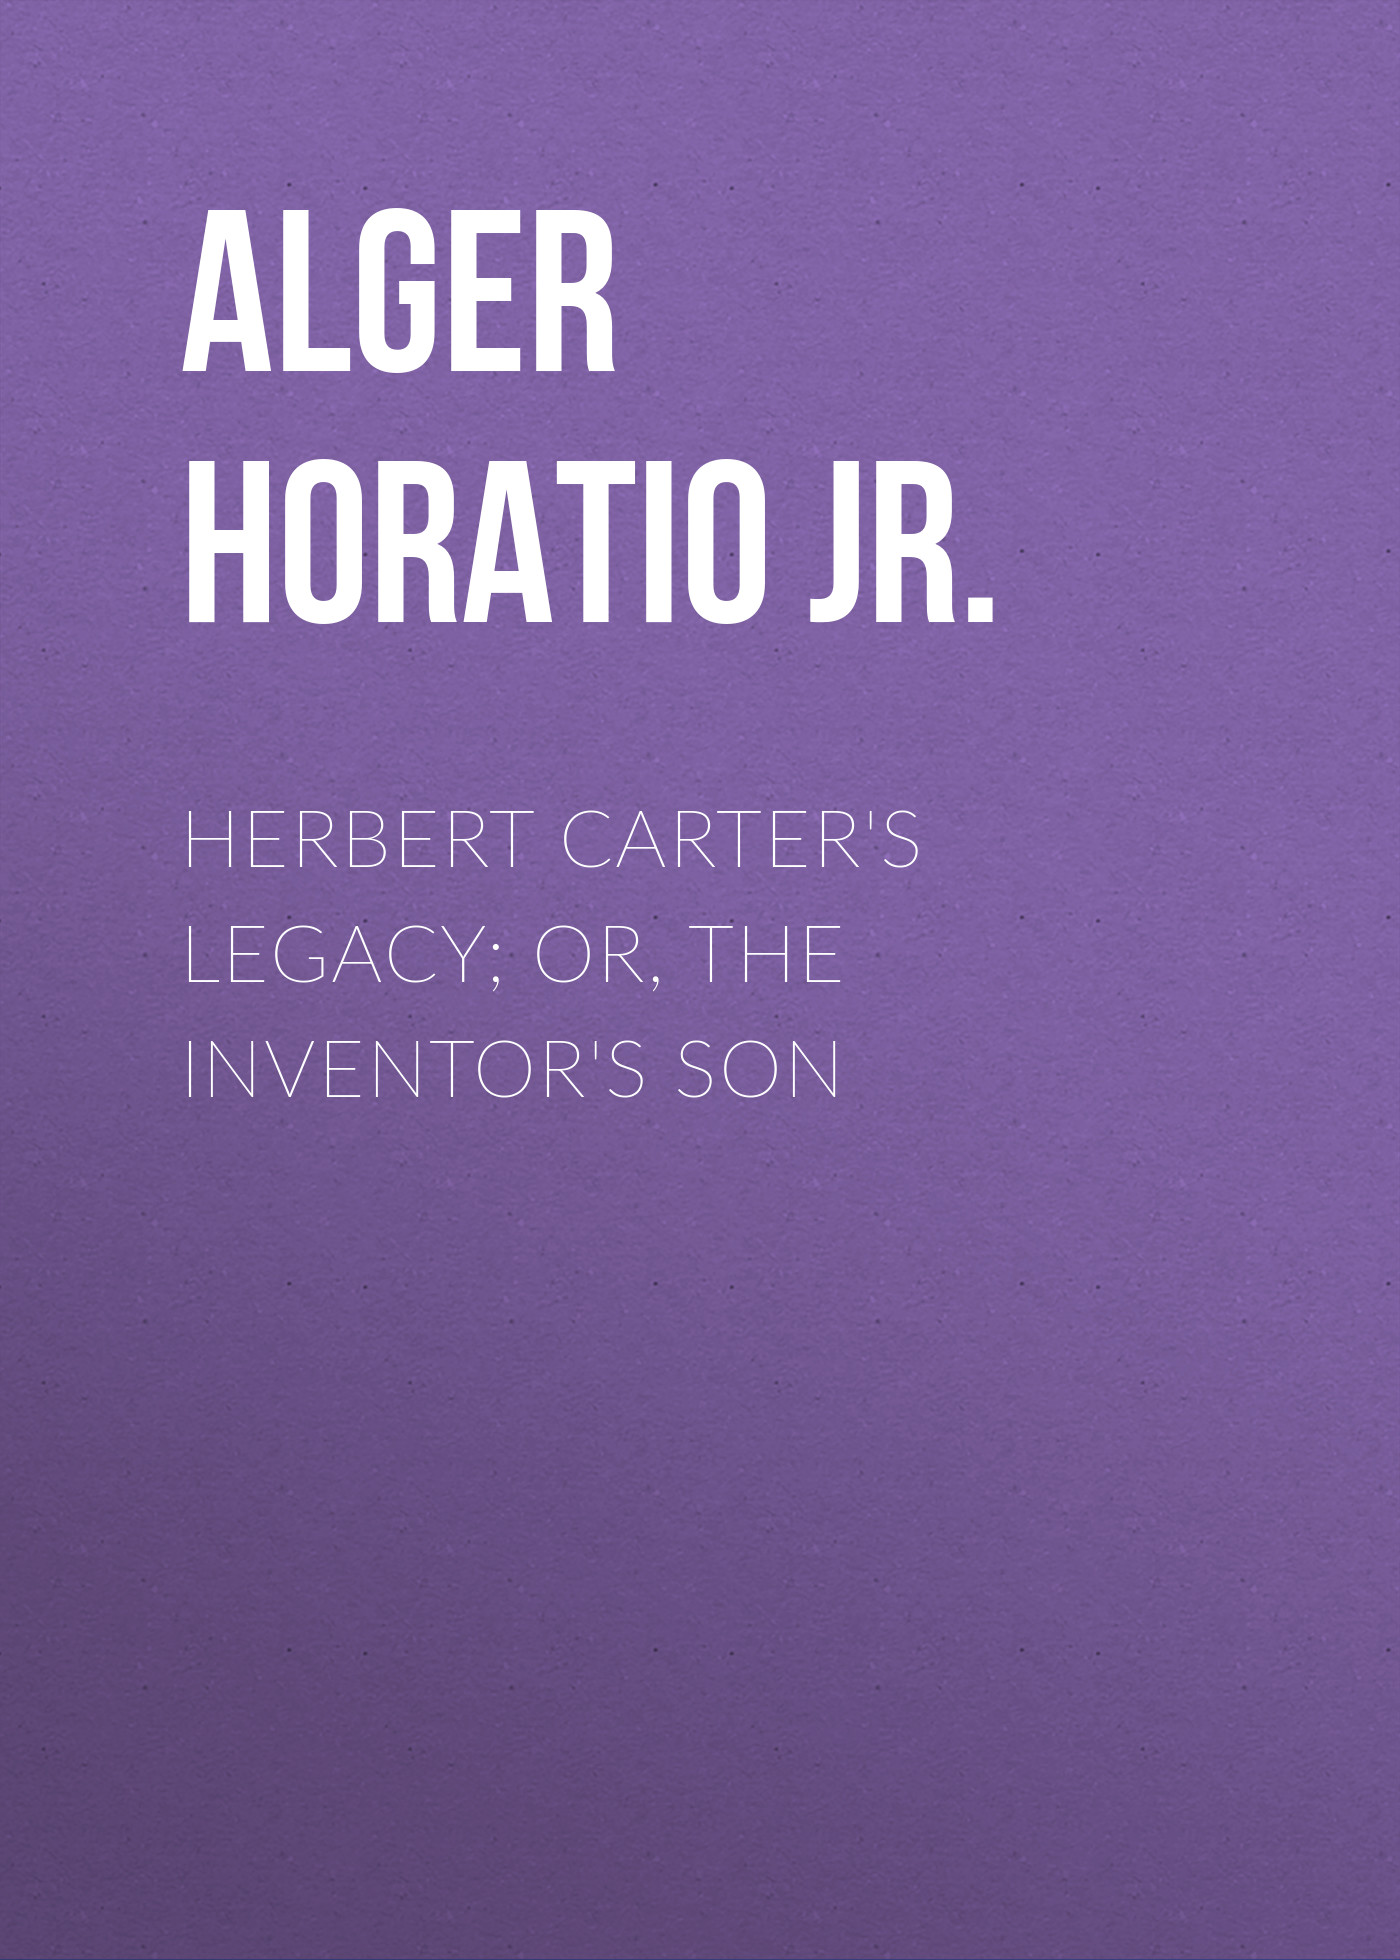 Книга Herbert Carter's Legacy; Or, the Inventor's Son из серии , созданная Horatio Alger, может относится к жанру Зарубежные детские книги, Литература 19 века, Зарубежная старинная литература, Зарубежная классика. Стоимость электронной книги Herbert Carter's Legacy; Or, the Inventor's Son с идентификатором 34839590 составляет 0 руб.